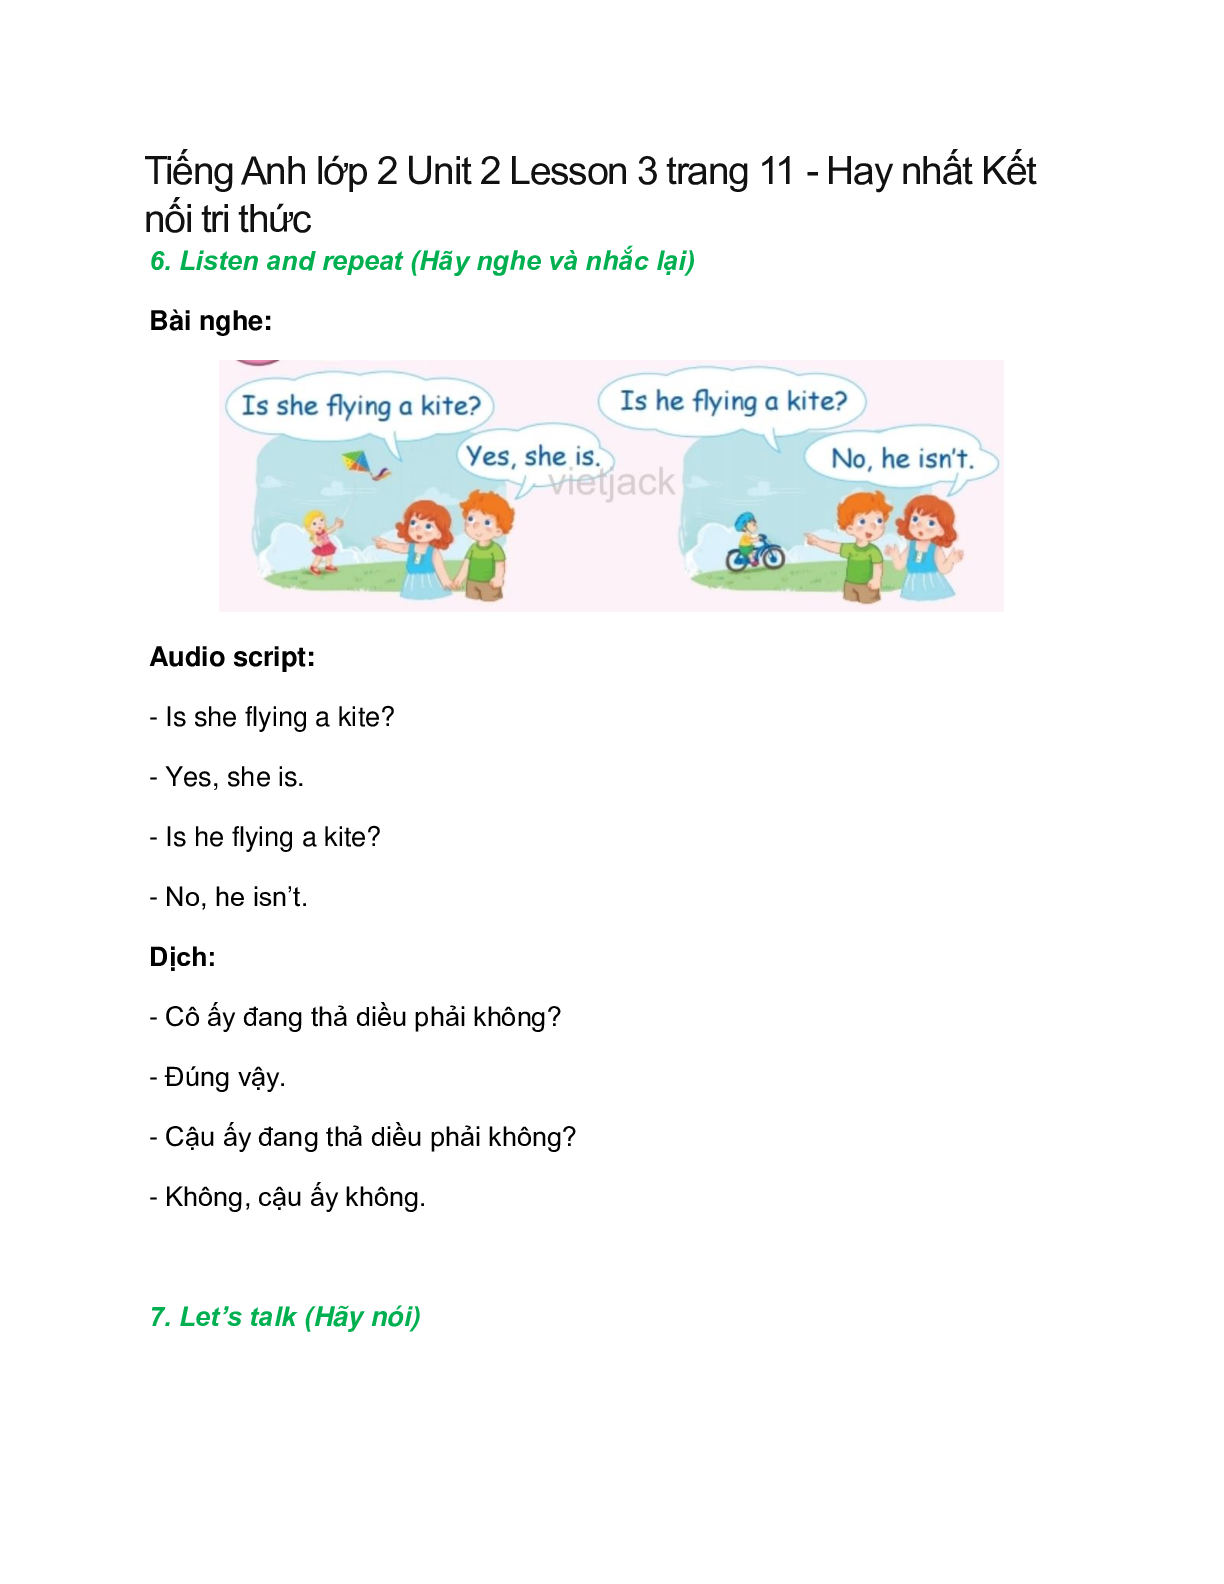 Tiếng Anh lớp 2 Unit 2 Lesson 3 trang 11 – Kết nối tri thức (trang 1)